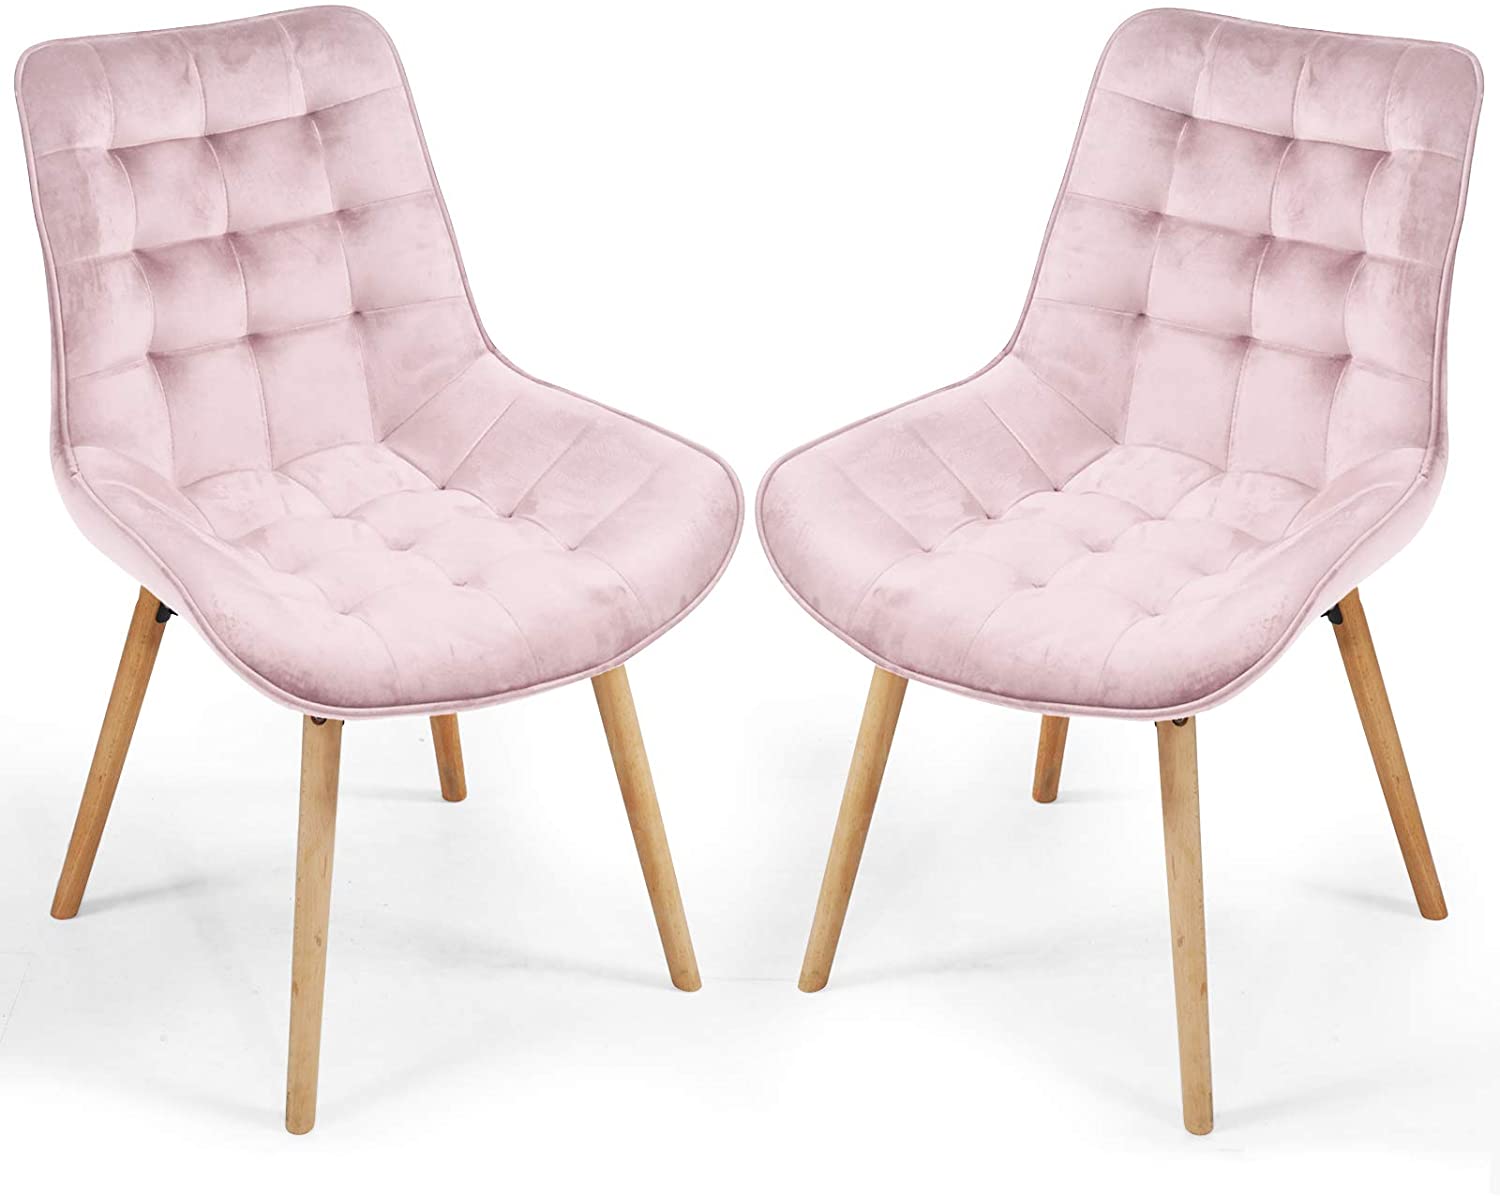 Stoel – Eetkamer stoel – Velvet stoel – Set van 2 – 59 x 52 x 84 cm – Fluweel – Roze